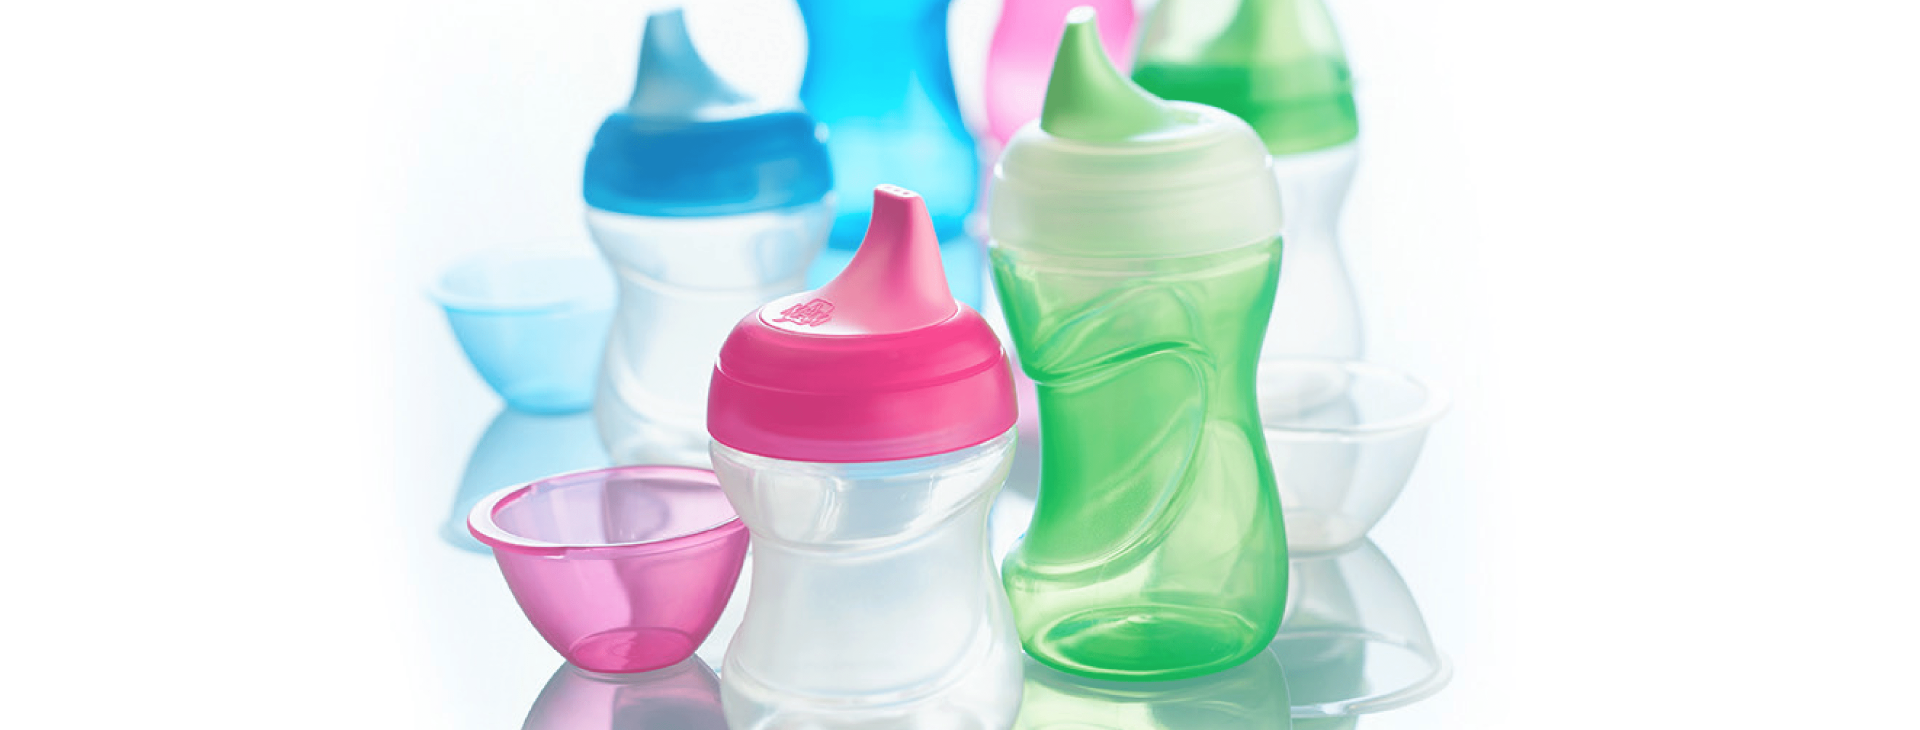 MAM baby bottles close-up | Nahansicht von MAM Babyflaschen